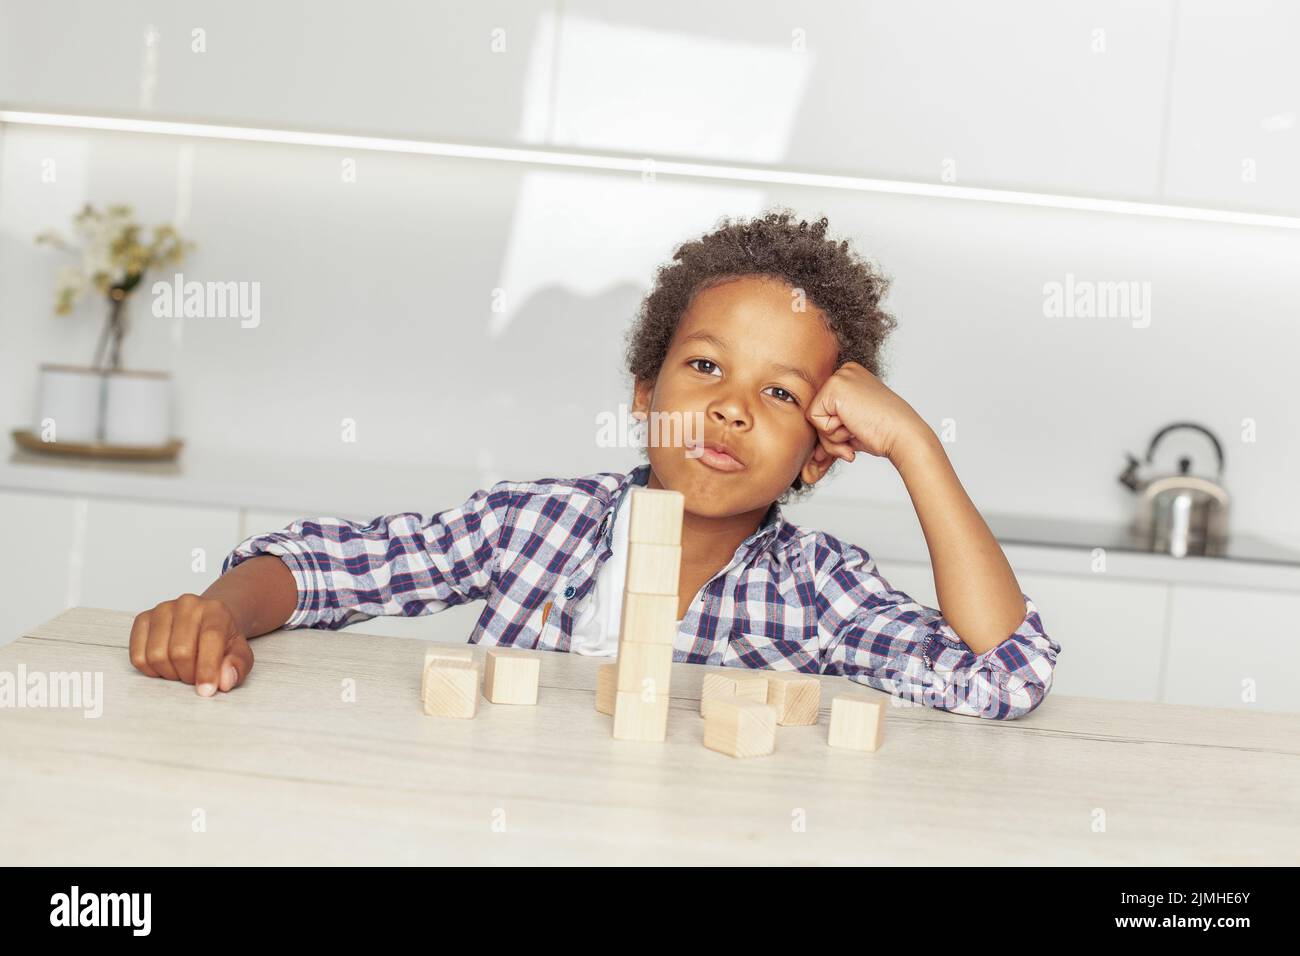 Retrato de niño pequeño africano americano gracioso con juguetes de bloque de madera de cubo Foto de stock